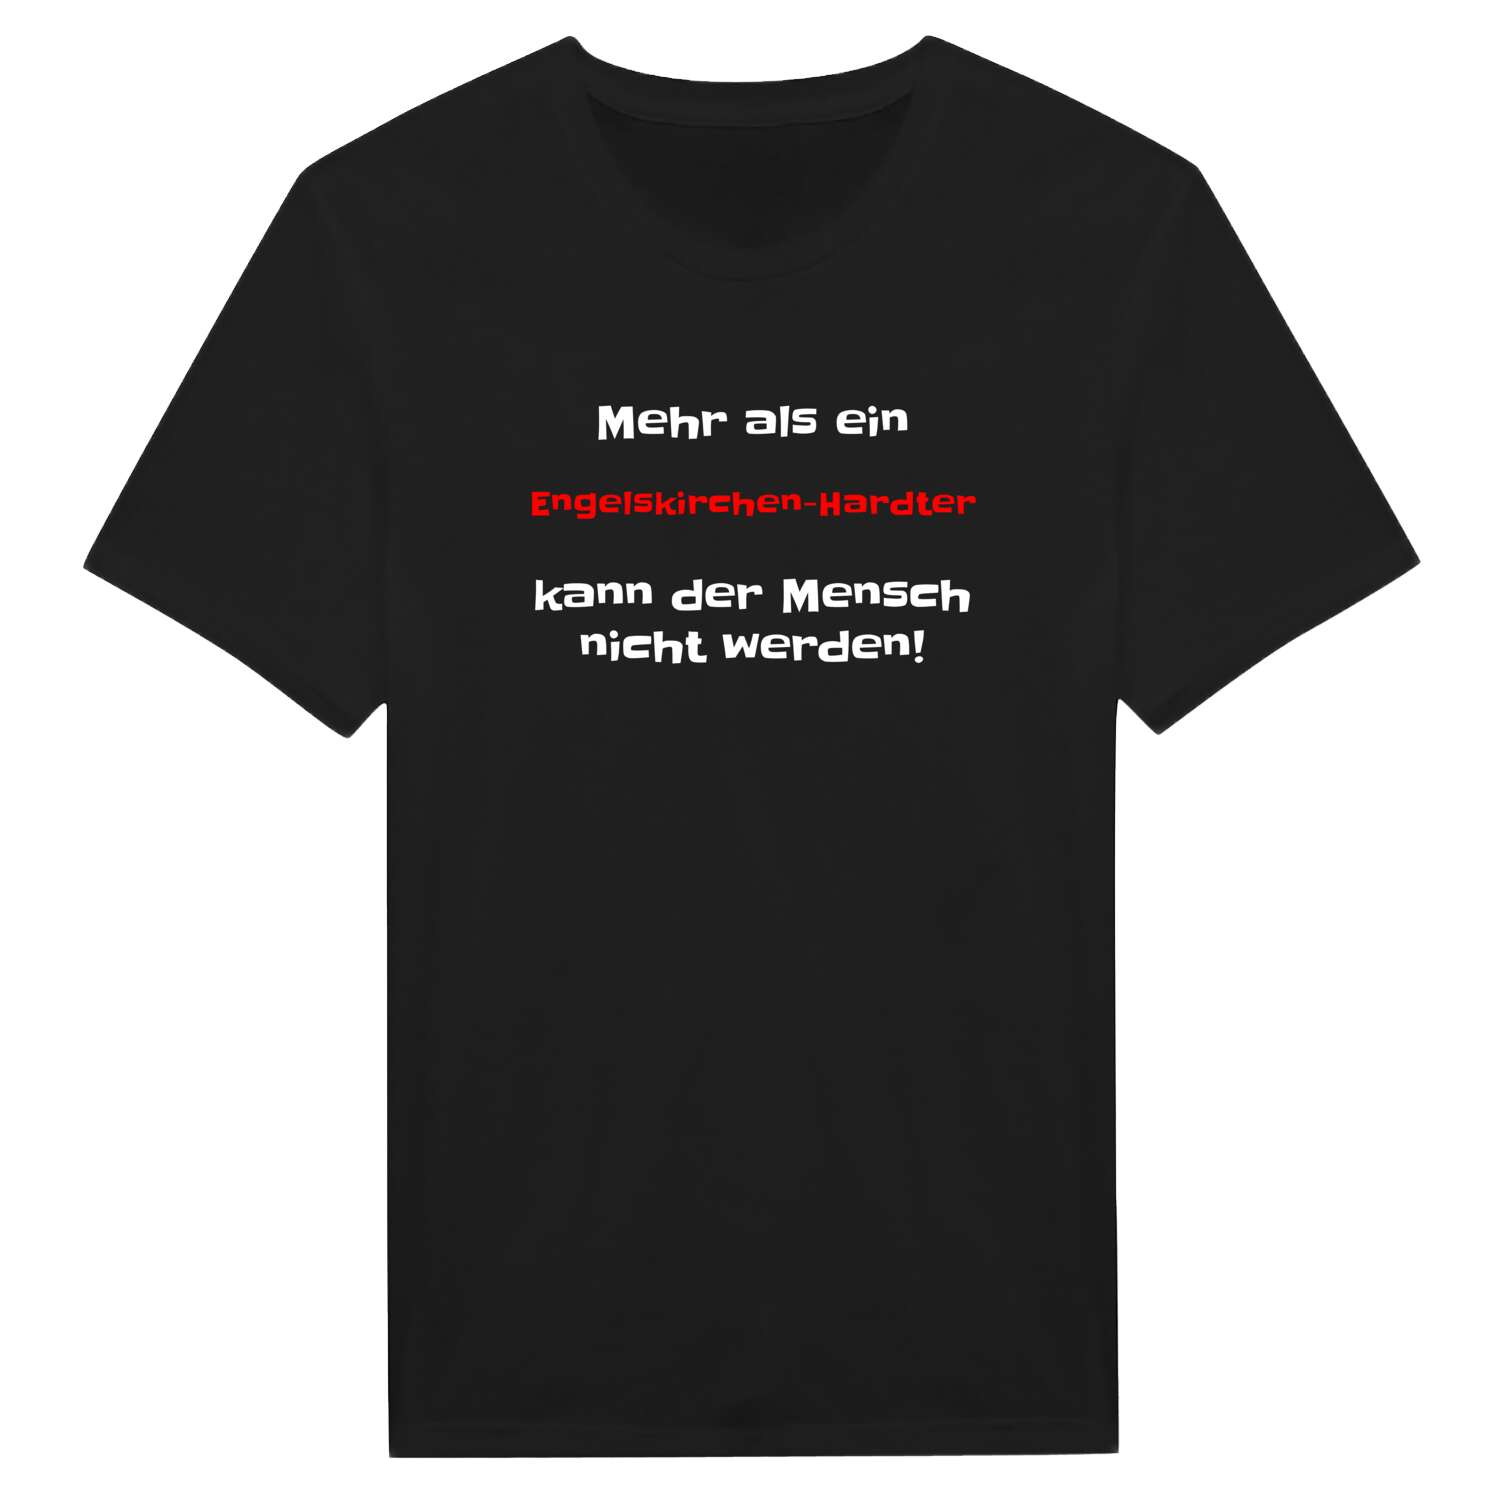 Engelskirchen-Hardt T-Shirt »Mehr als ein«